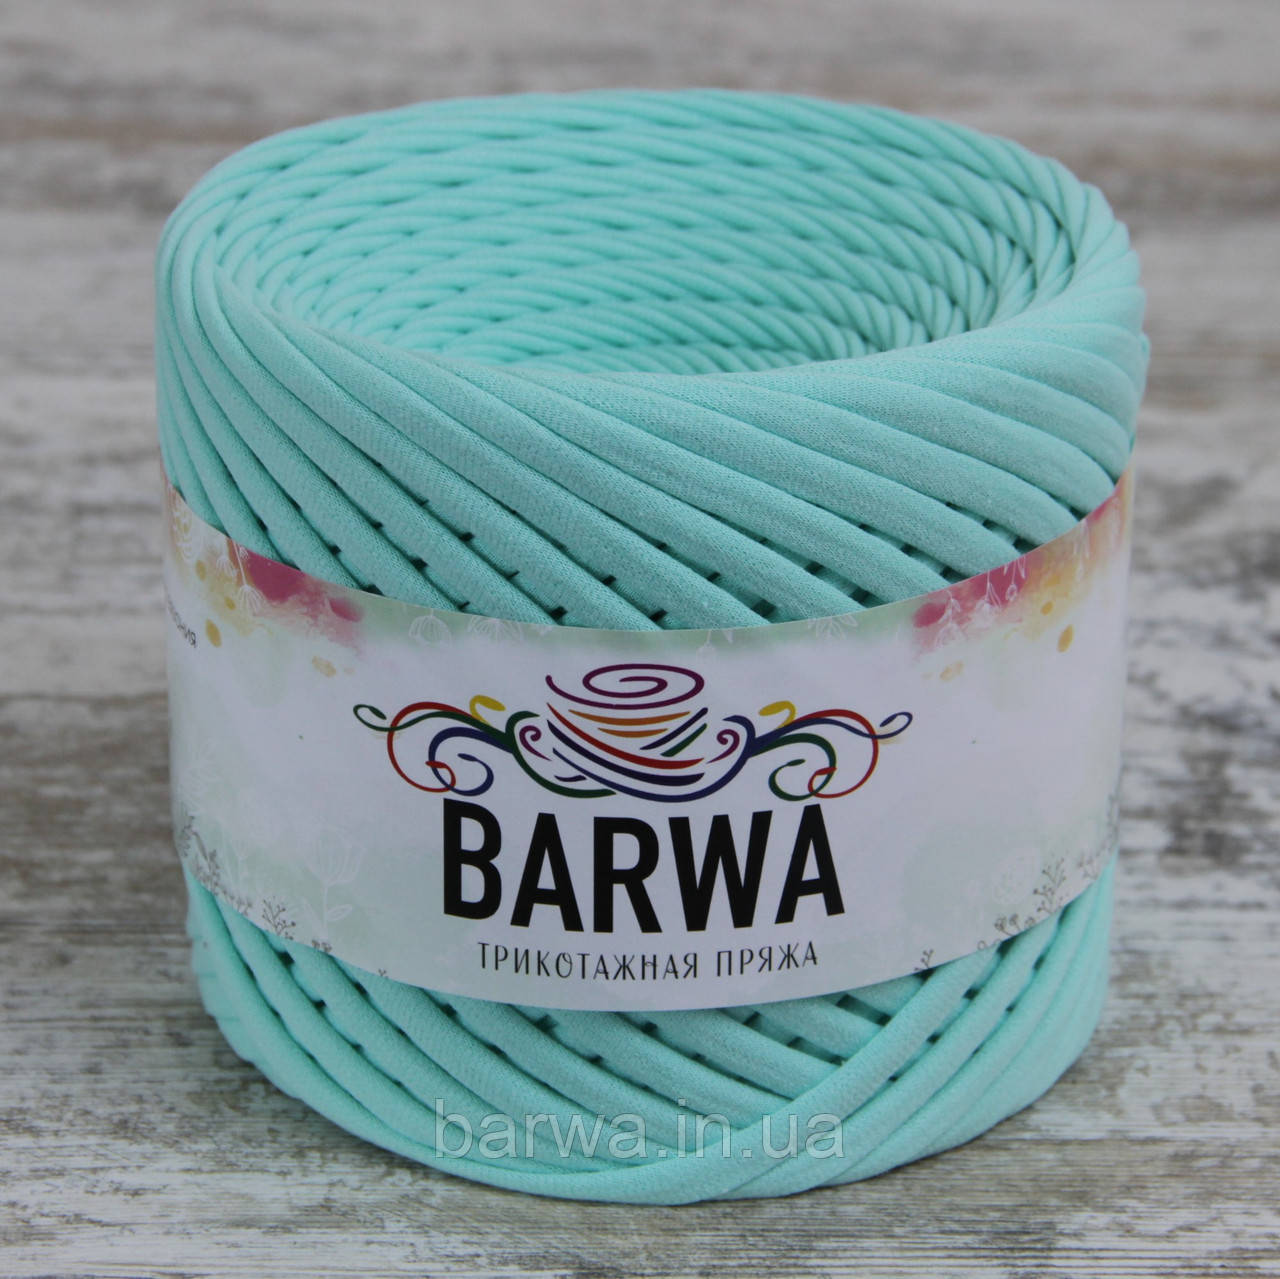 Пряжа трикотажна BARWA  5-7 мм, колір Тіффані